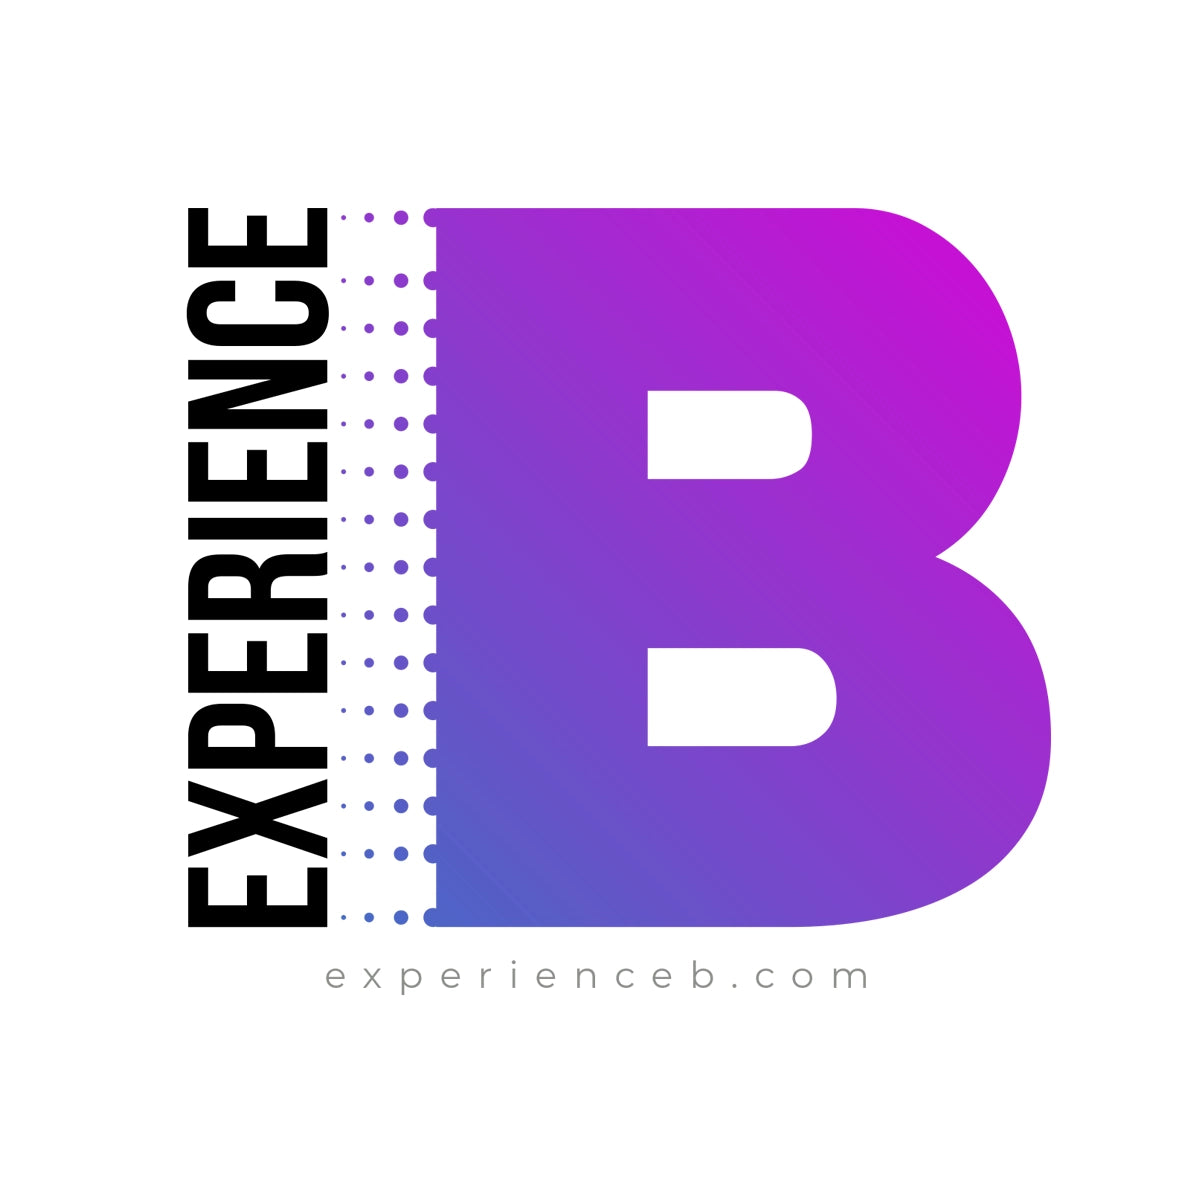 experienceb.com